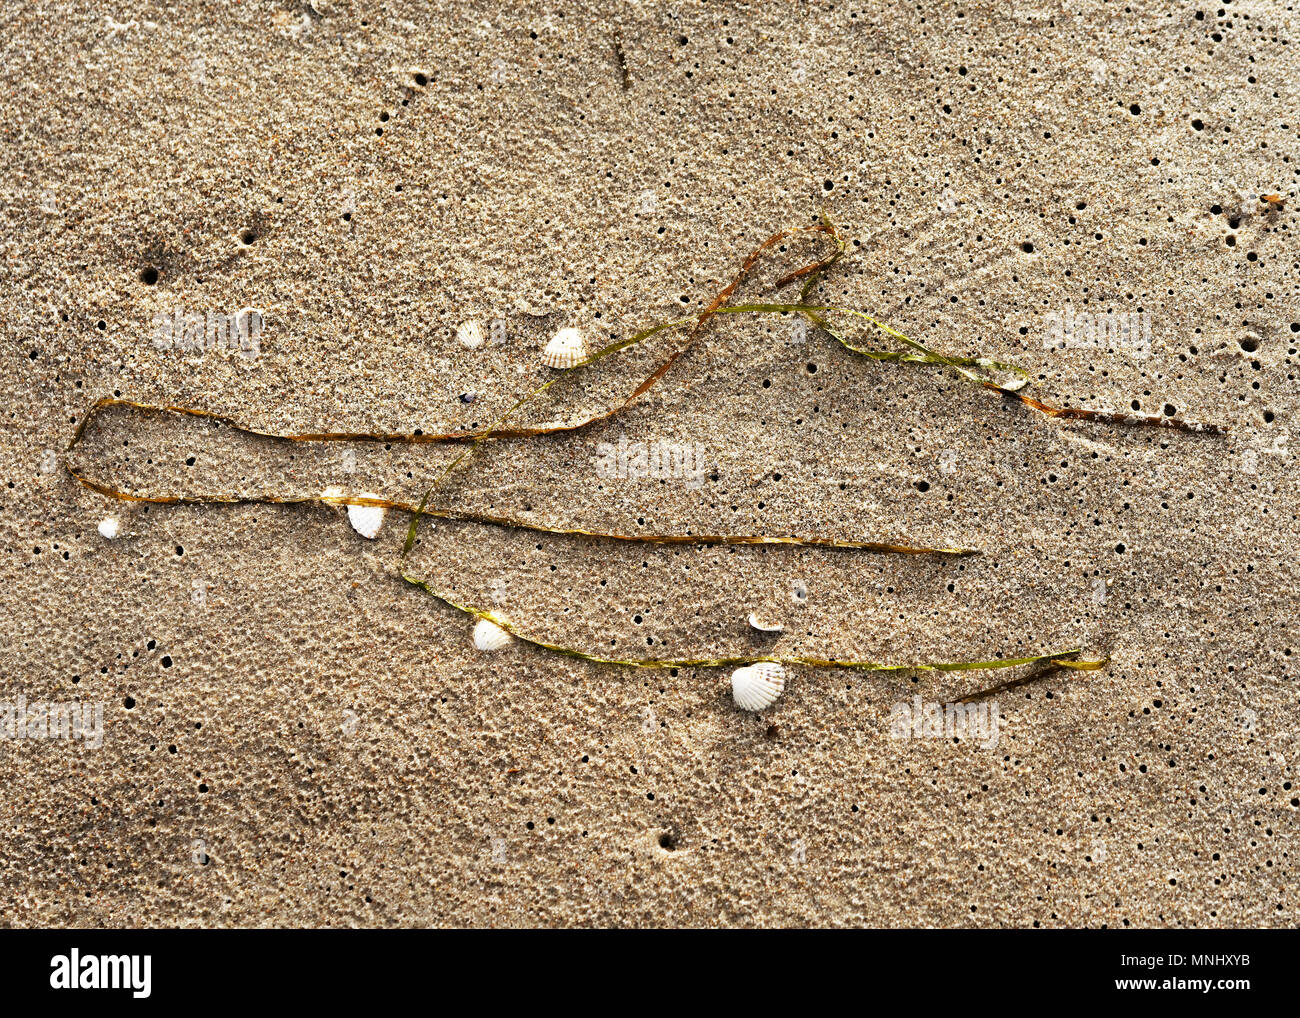 Rincé les herbiers sur une plage de sable comme une seule formation - close-up - Emplacement : Allemagne, mer Baltique, l'île de RÃ¼gen Banque D'Images